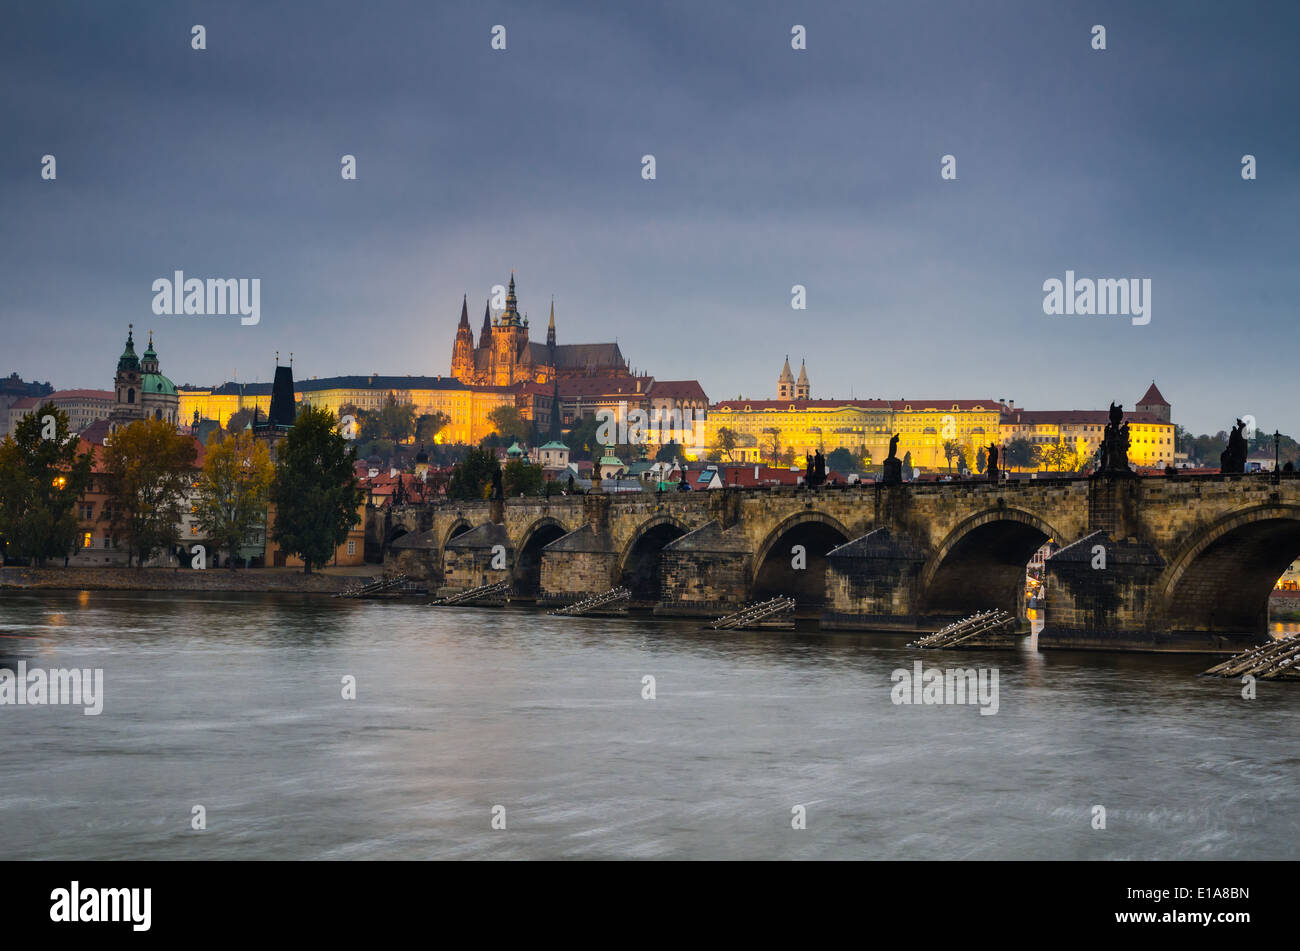 Le Château de Prague (construit en style gothique) et le Pont Charles sont les symboles de la capitale tchèque, construit à l'époque médiévale. Banque D'Images